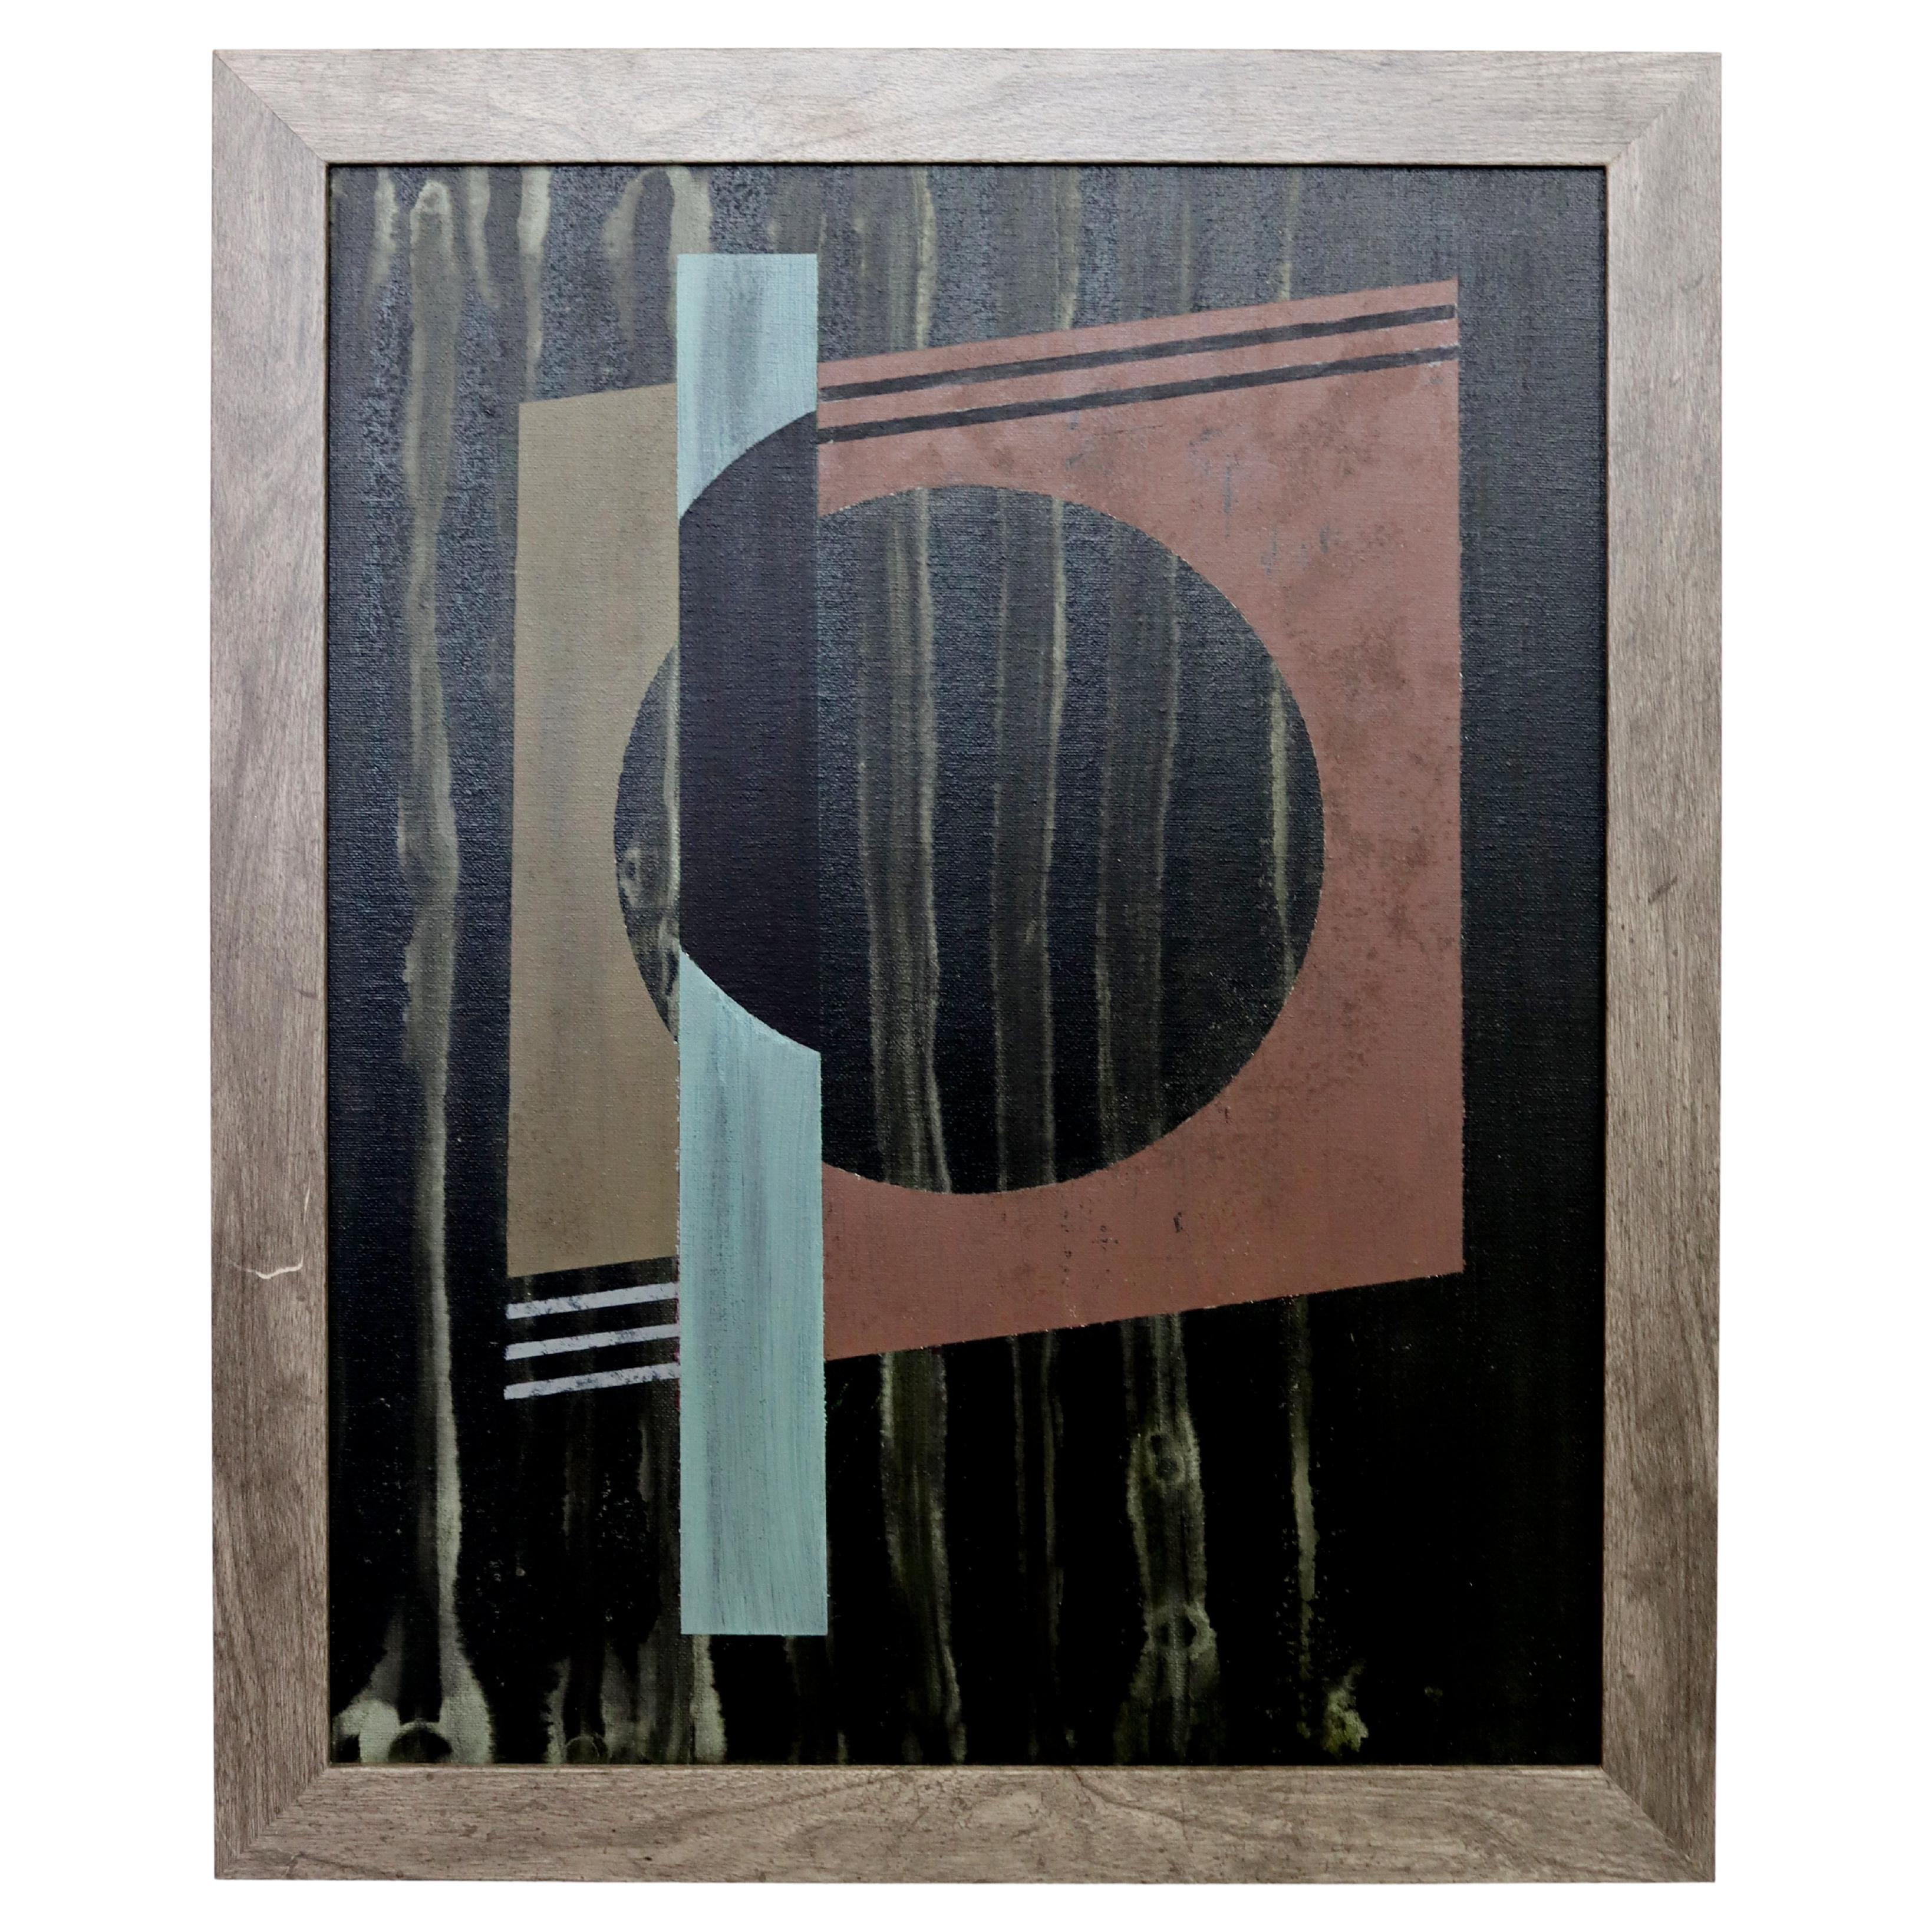 Peinture sur panneau encadrée moderniste contemporaine encadrée Gunda Hass signée, 2016 Sphère